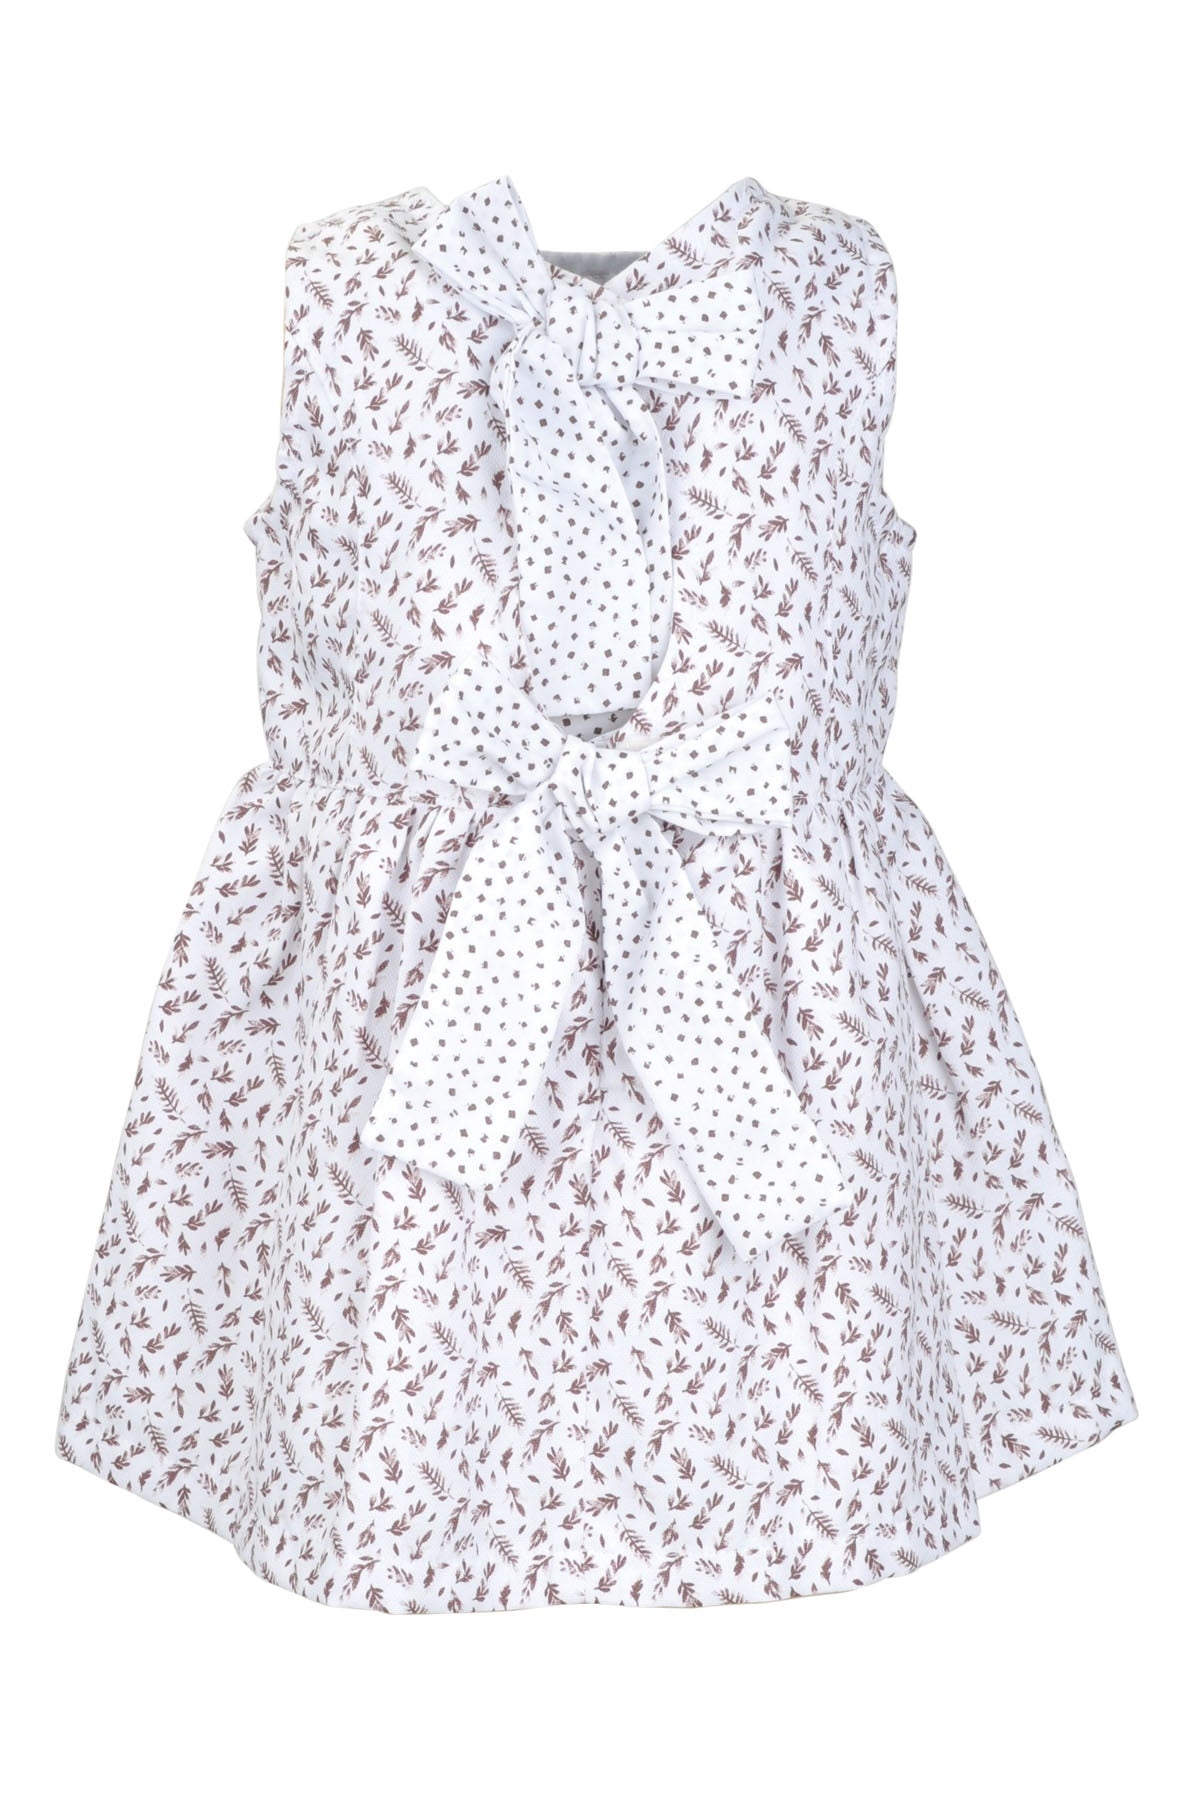 Kız Bebek Bej Fiyonklu Desenli Elbise (9ay-4yaş)-1